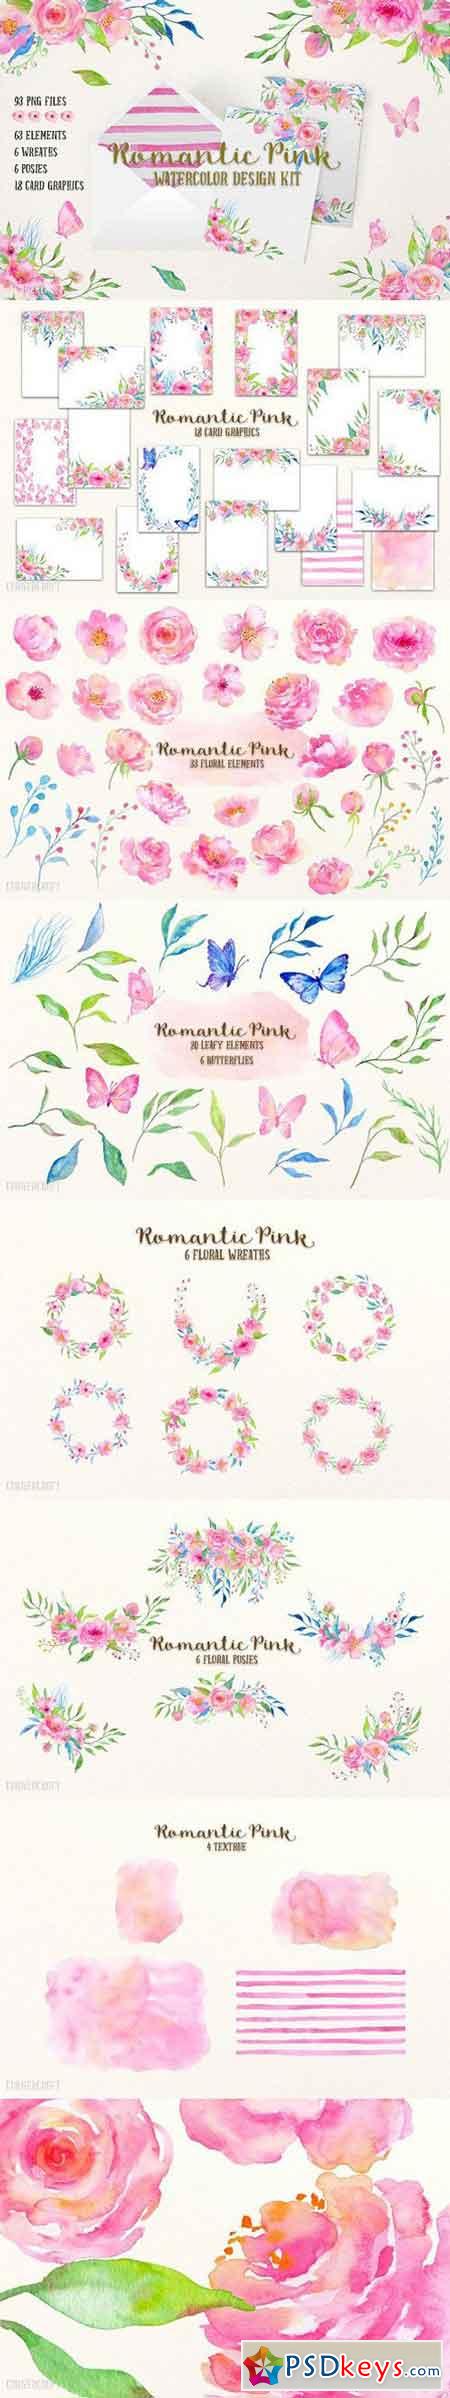 Watercolor Design Kit Romantic Pink 1288893